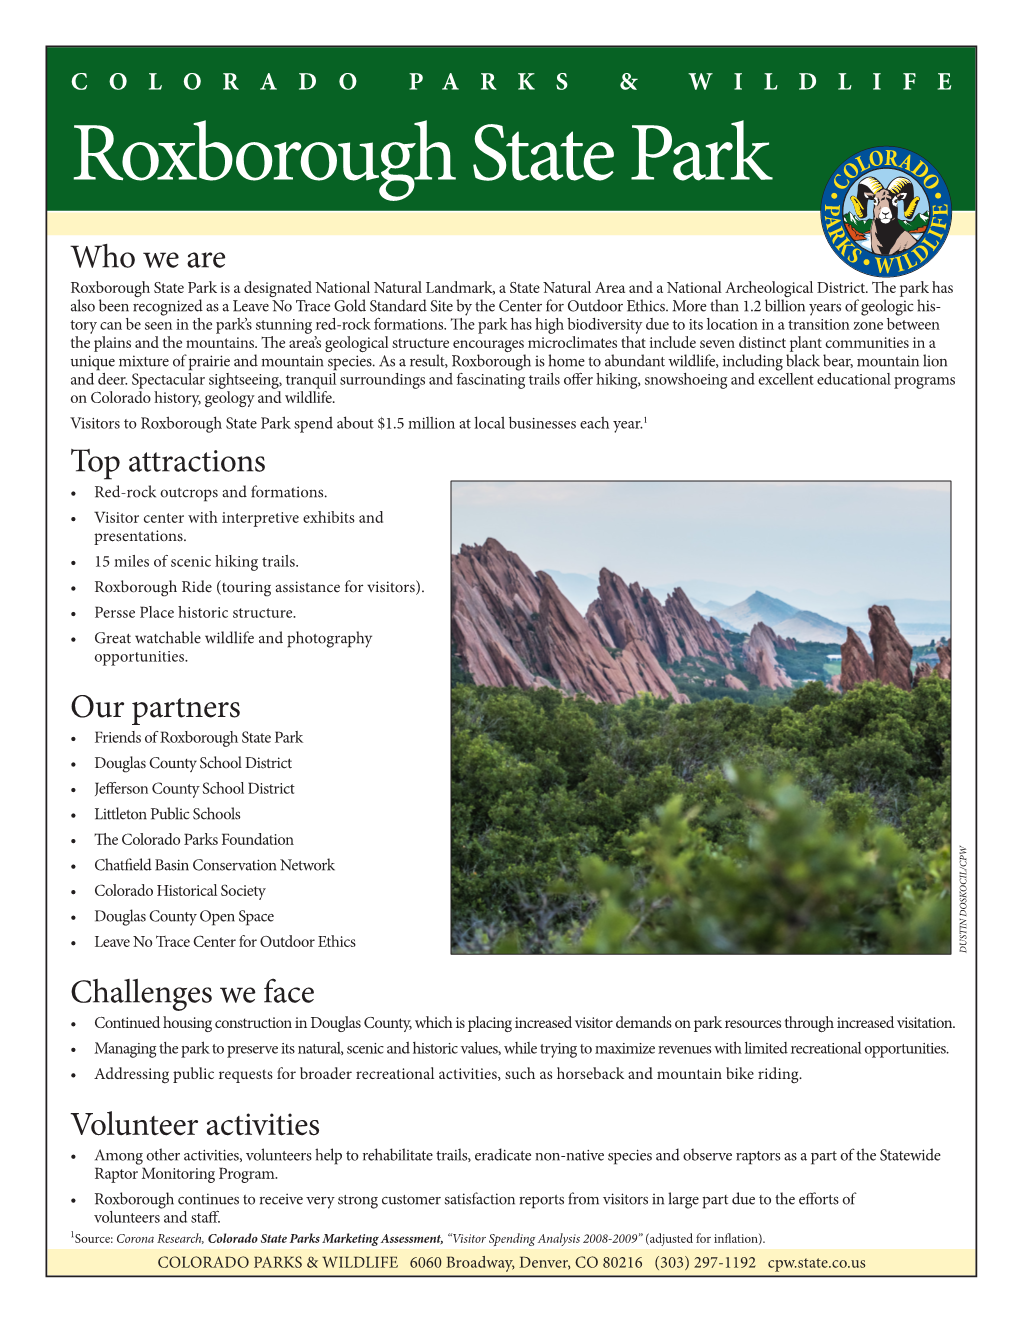 Roxborough State Park Fact Sheet